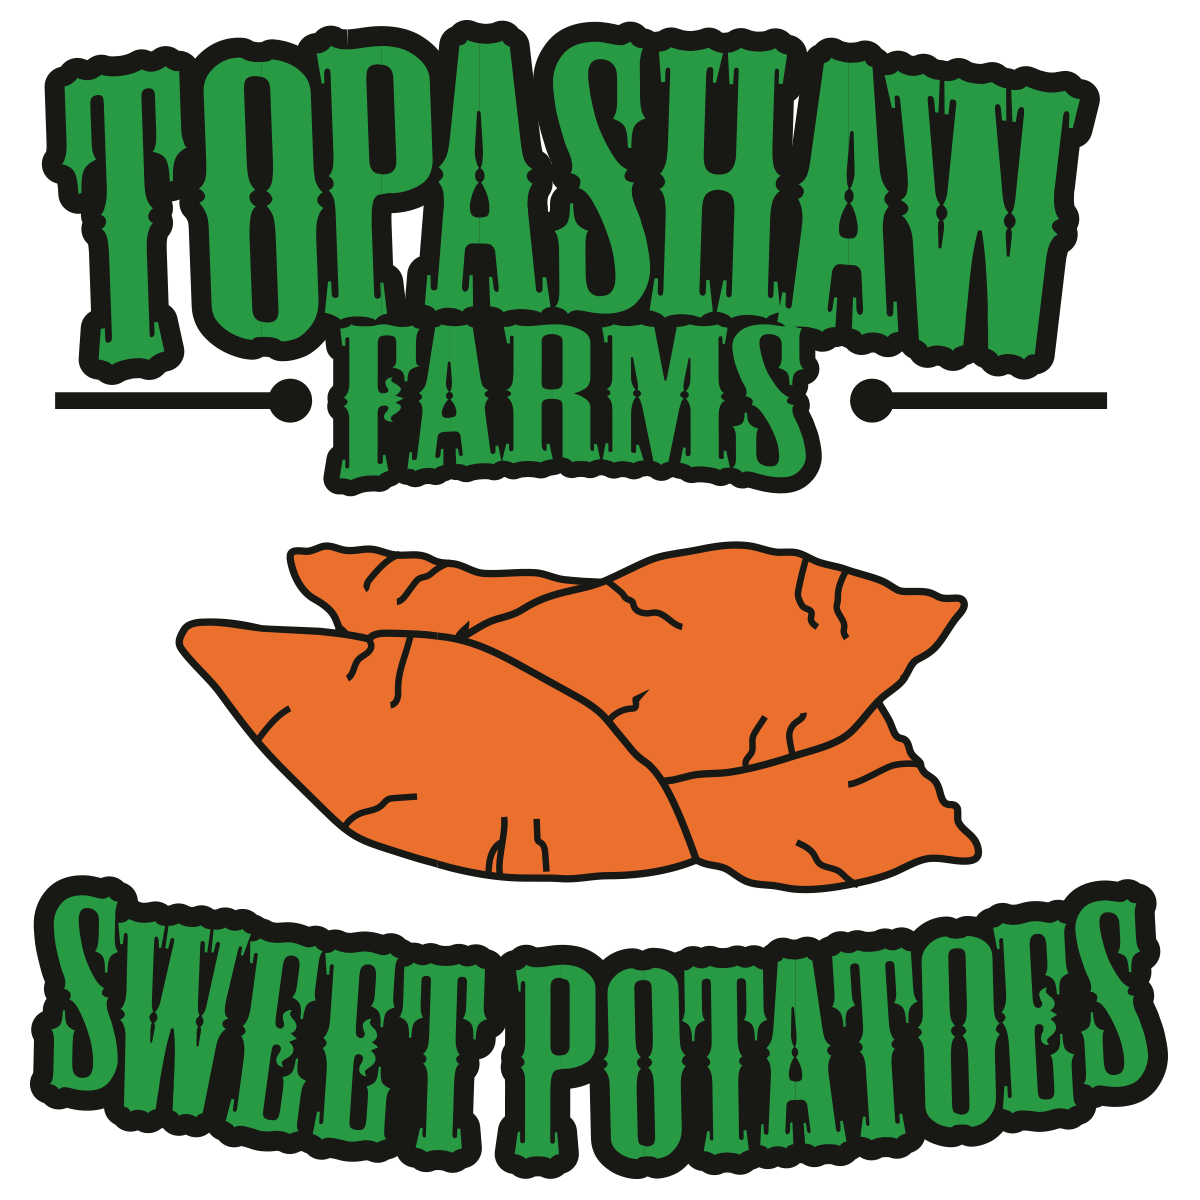 Topashaw Farms